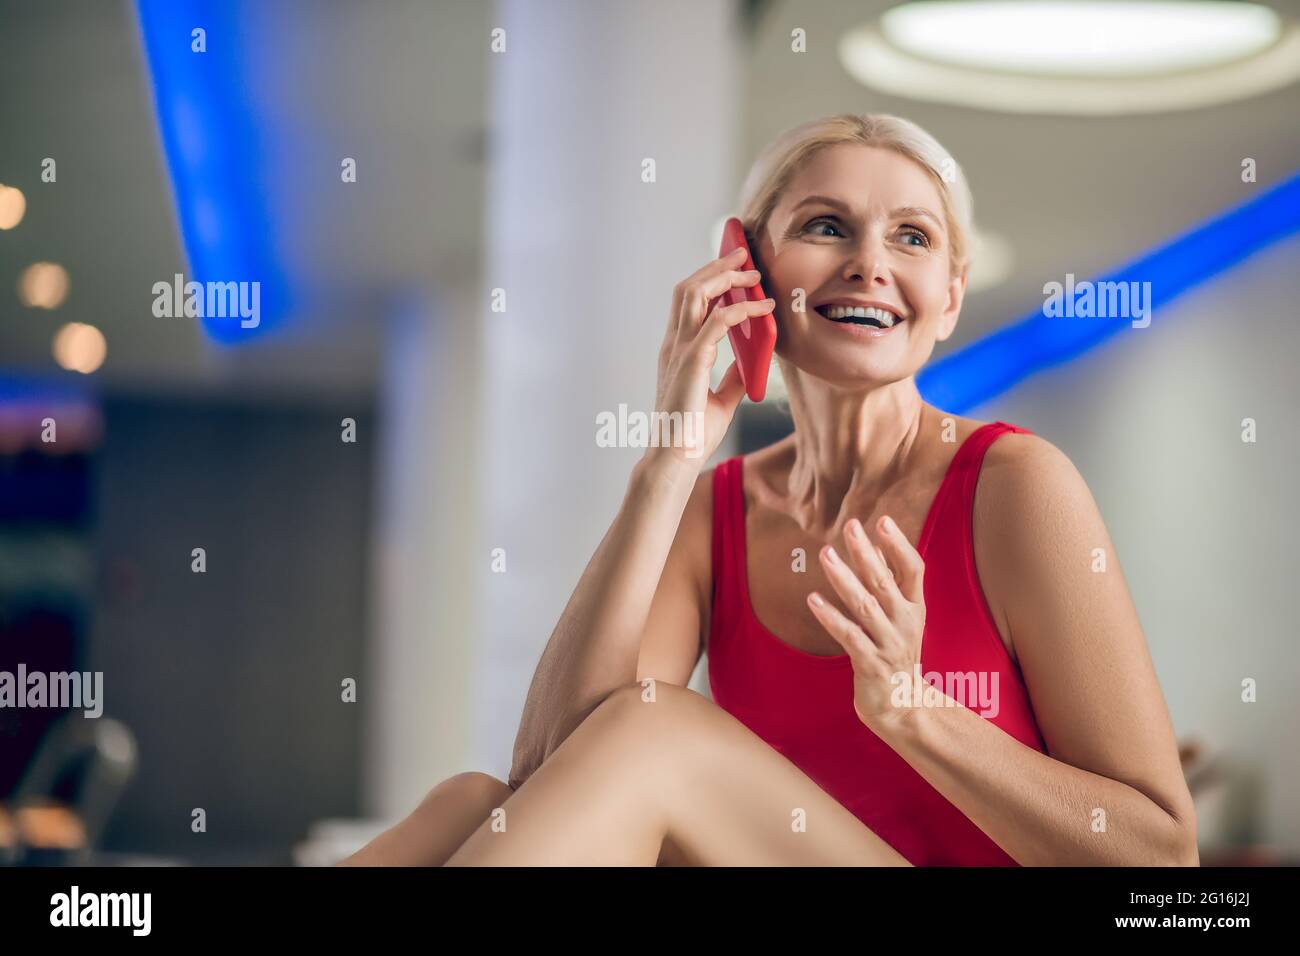 Belle femme blonde dans un maillot de bain rouge avec un smartphone Banque D'Images